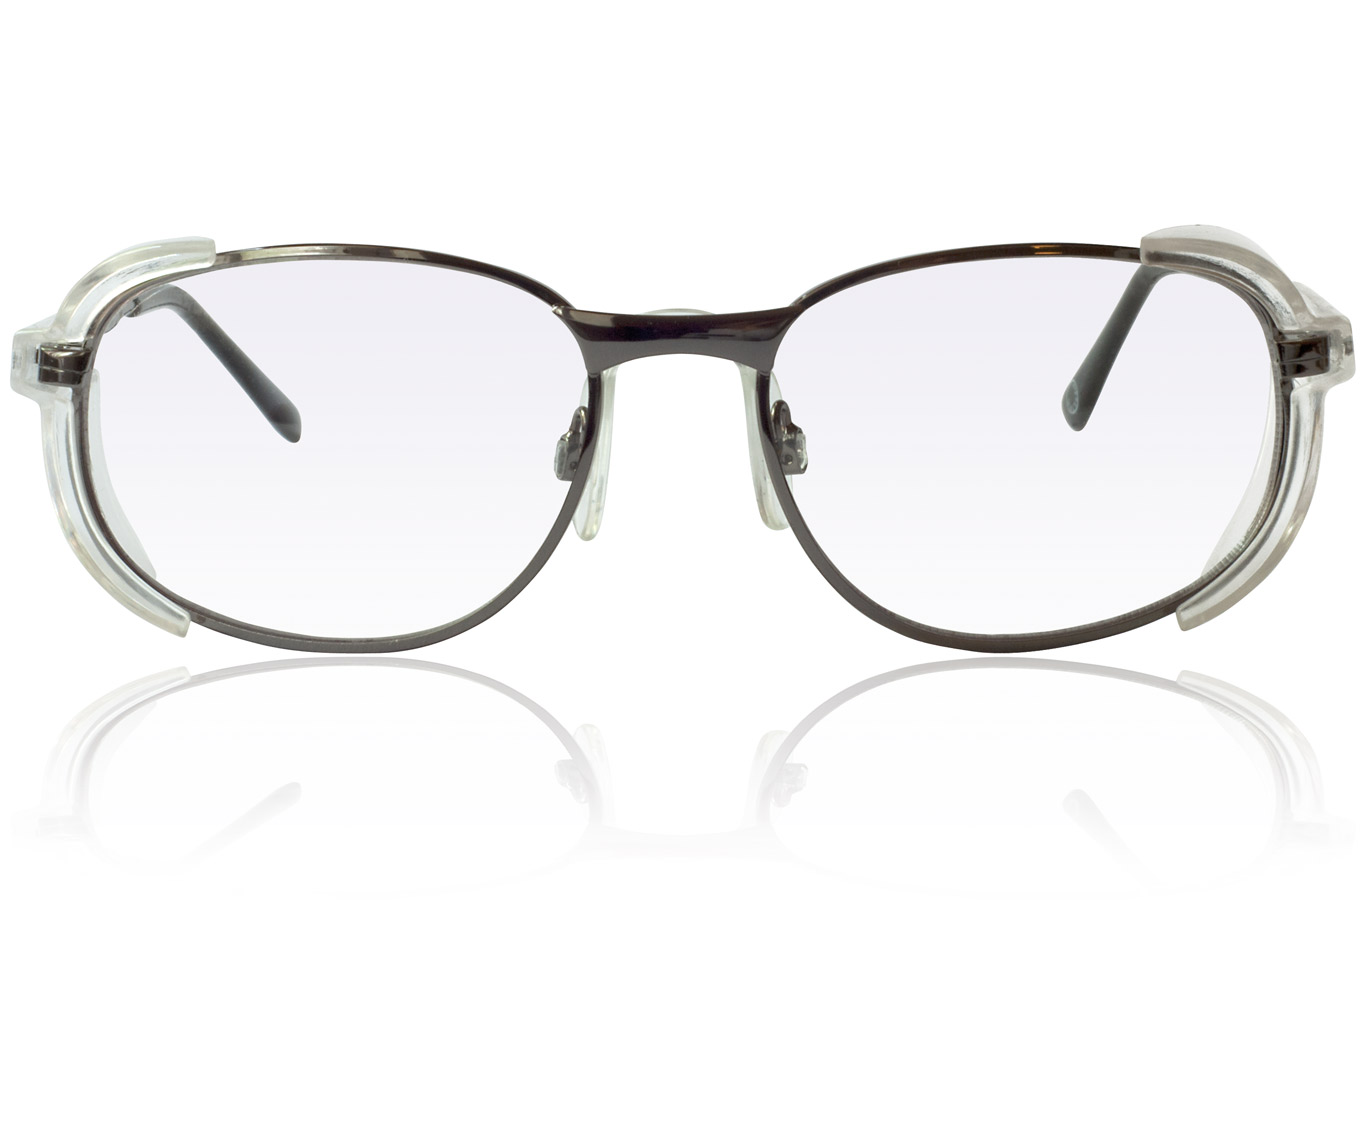 Korrektionsschutzbrille Modell A205